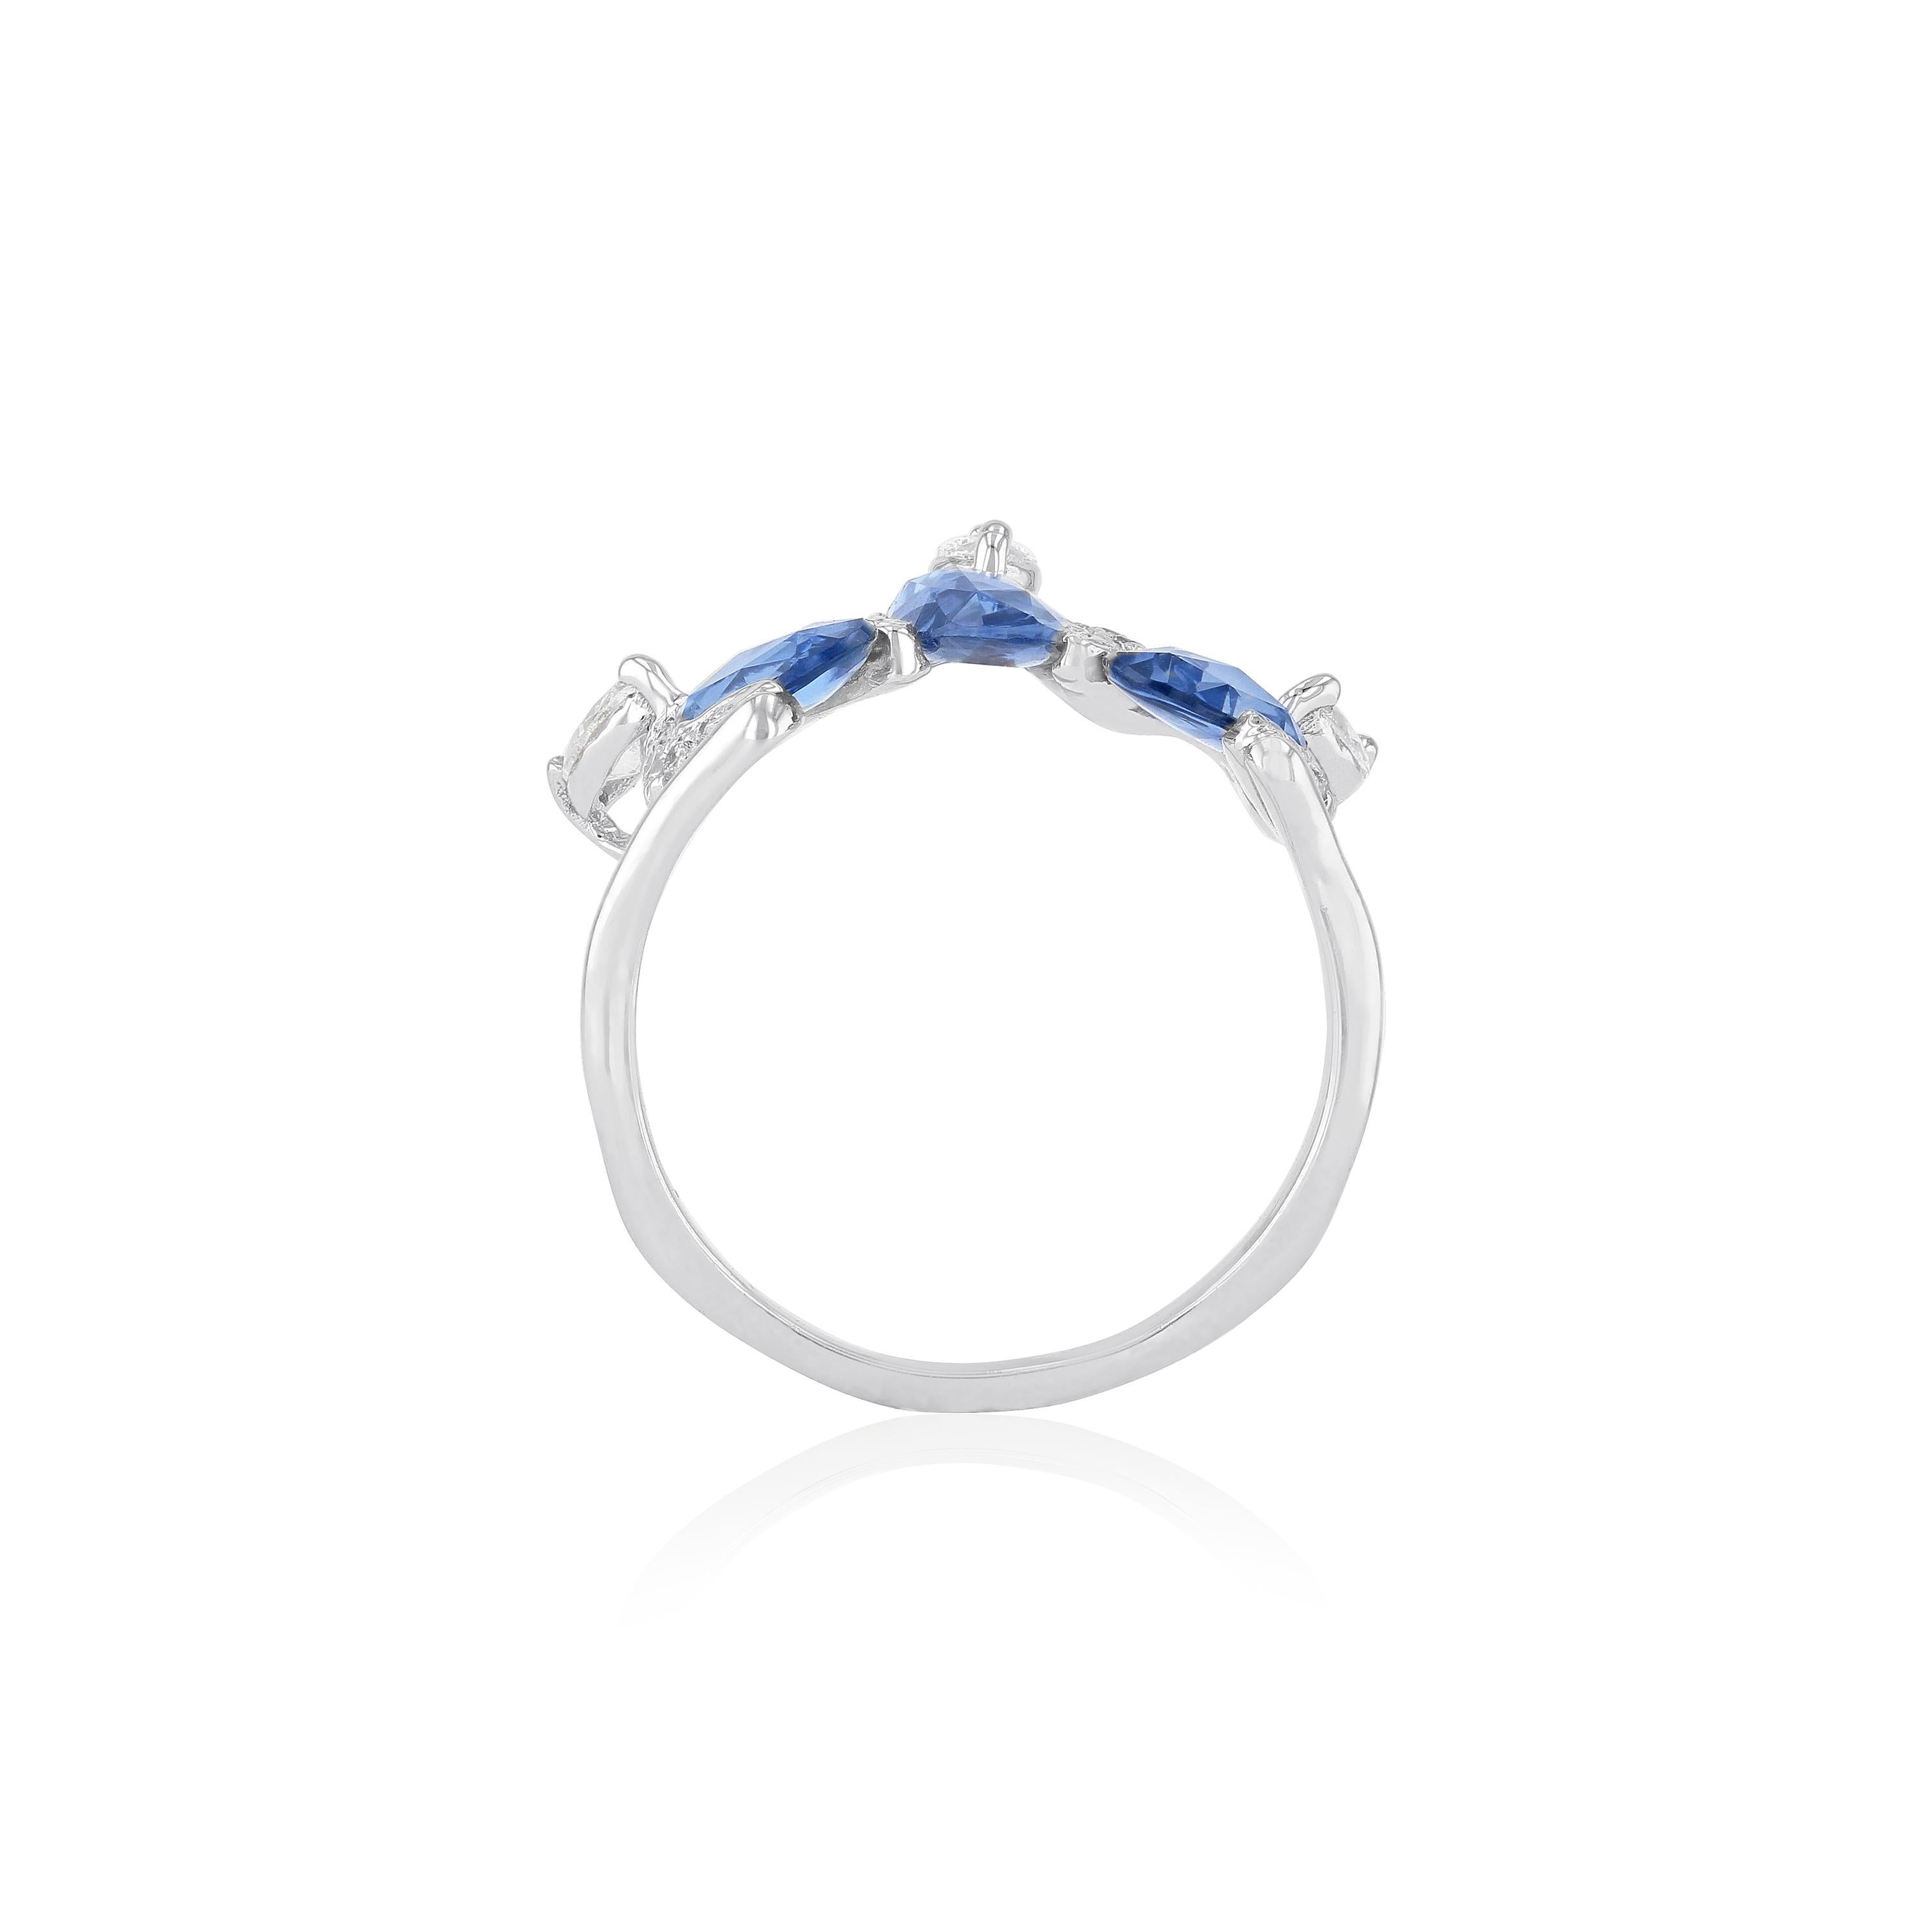 Dieser ikonische Ring ist von der islamischen Architektur und dem arabesken Design inspiriert. Er besteht aus 3 blauen Saphiren, die mit 3 marquisefarbenen Diamanten auf der Oberseite verziert sind. Die perfekte Mischung aus edgy und